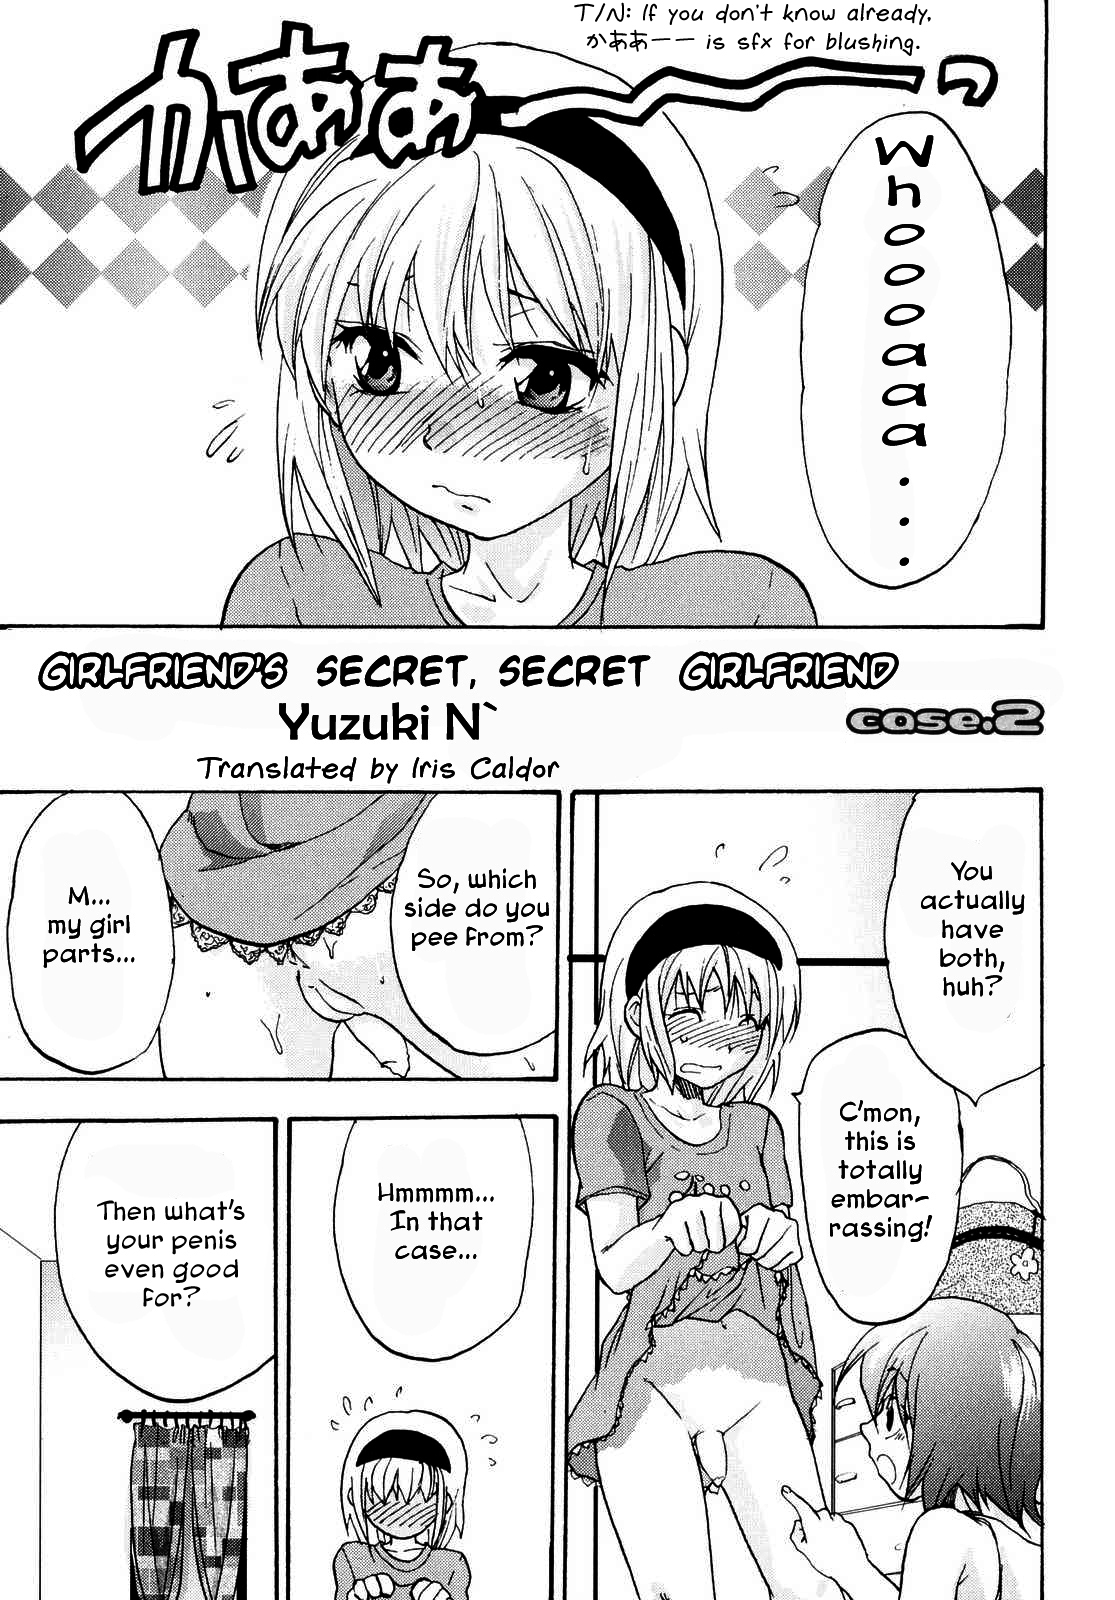 [Yuzuki N Dash] Kanojo no Himitsu to Himitsu no Kanojo case.2 | Girlfriend's Secret, Secret Girlfriend - Case 2 (Futanarikko Lovers 3) [English] [Iris Caldor] page 1 full